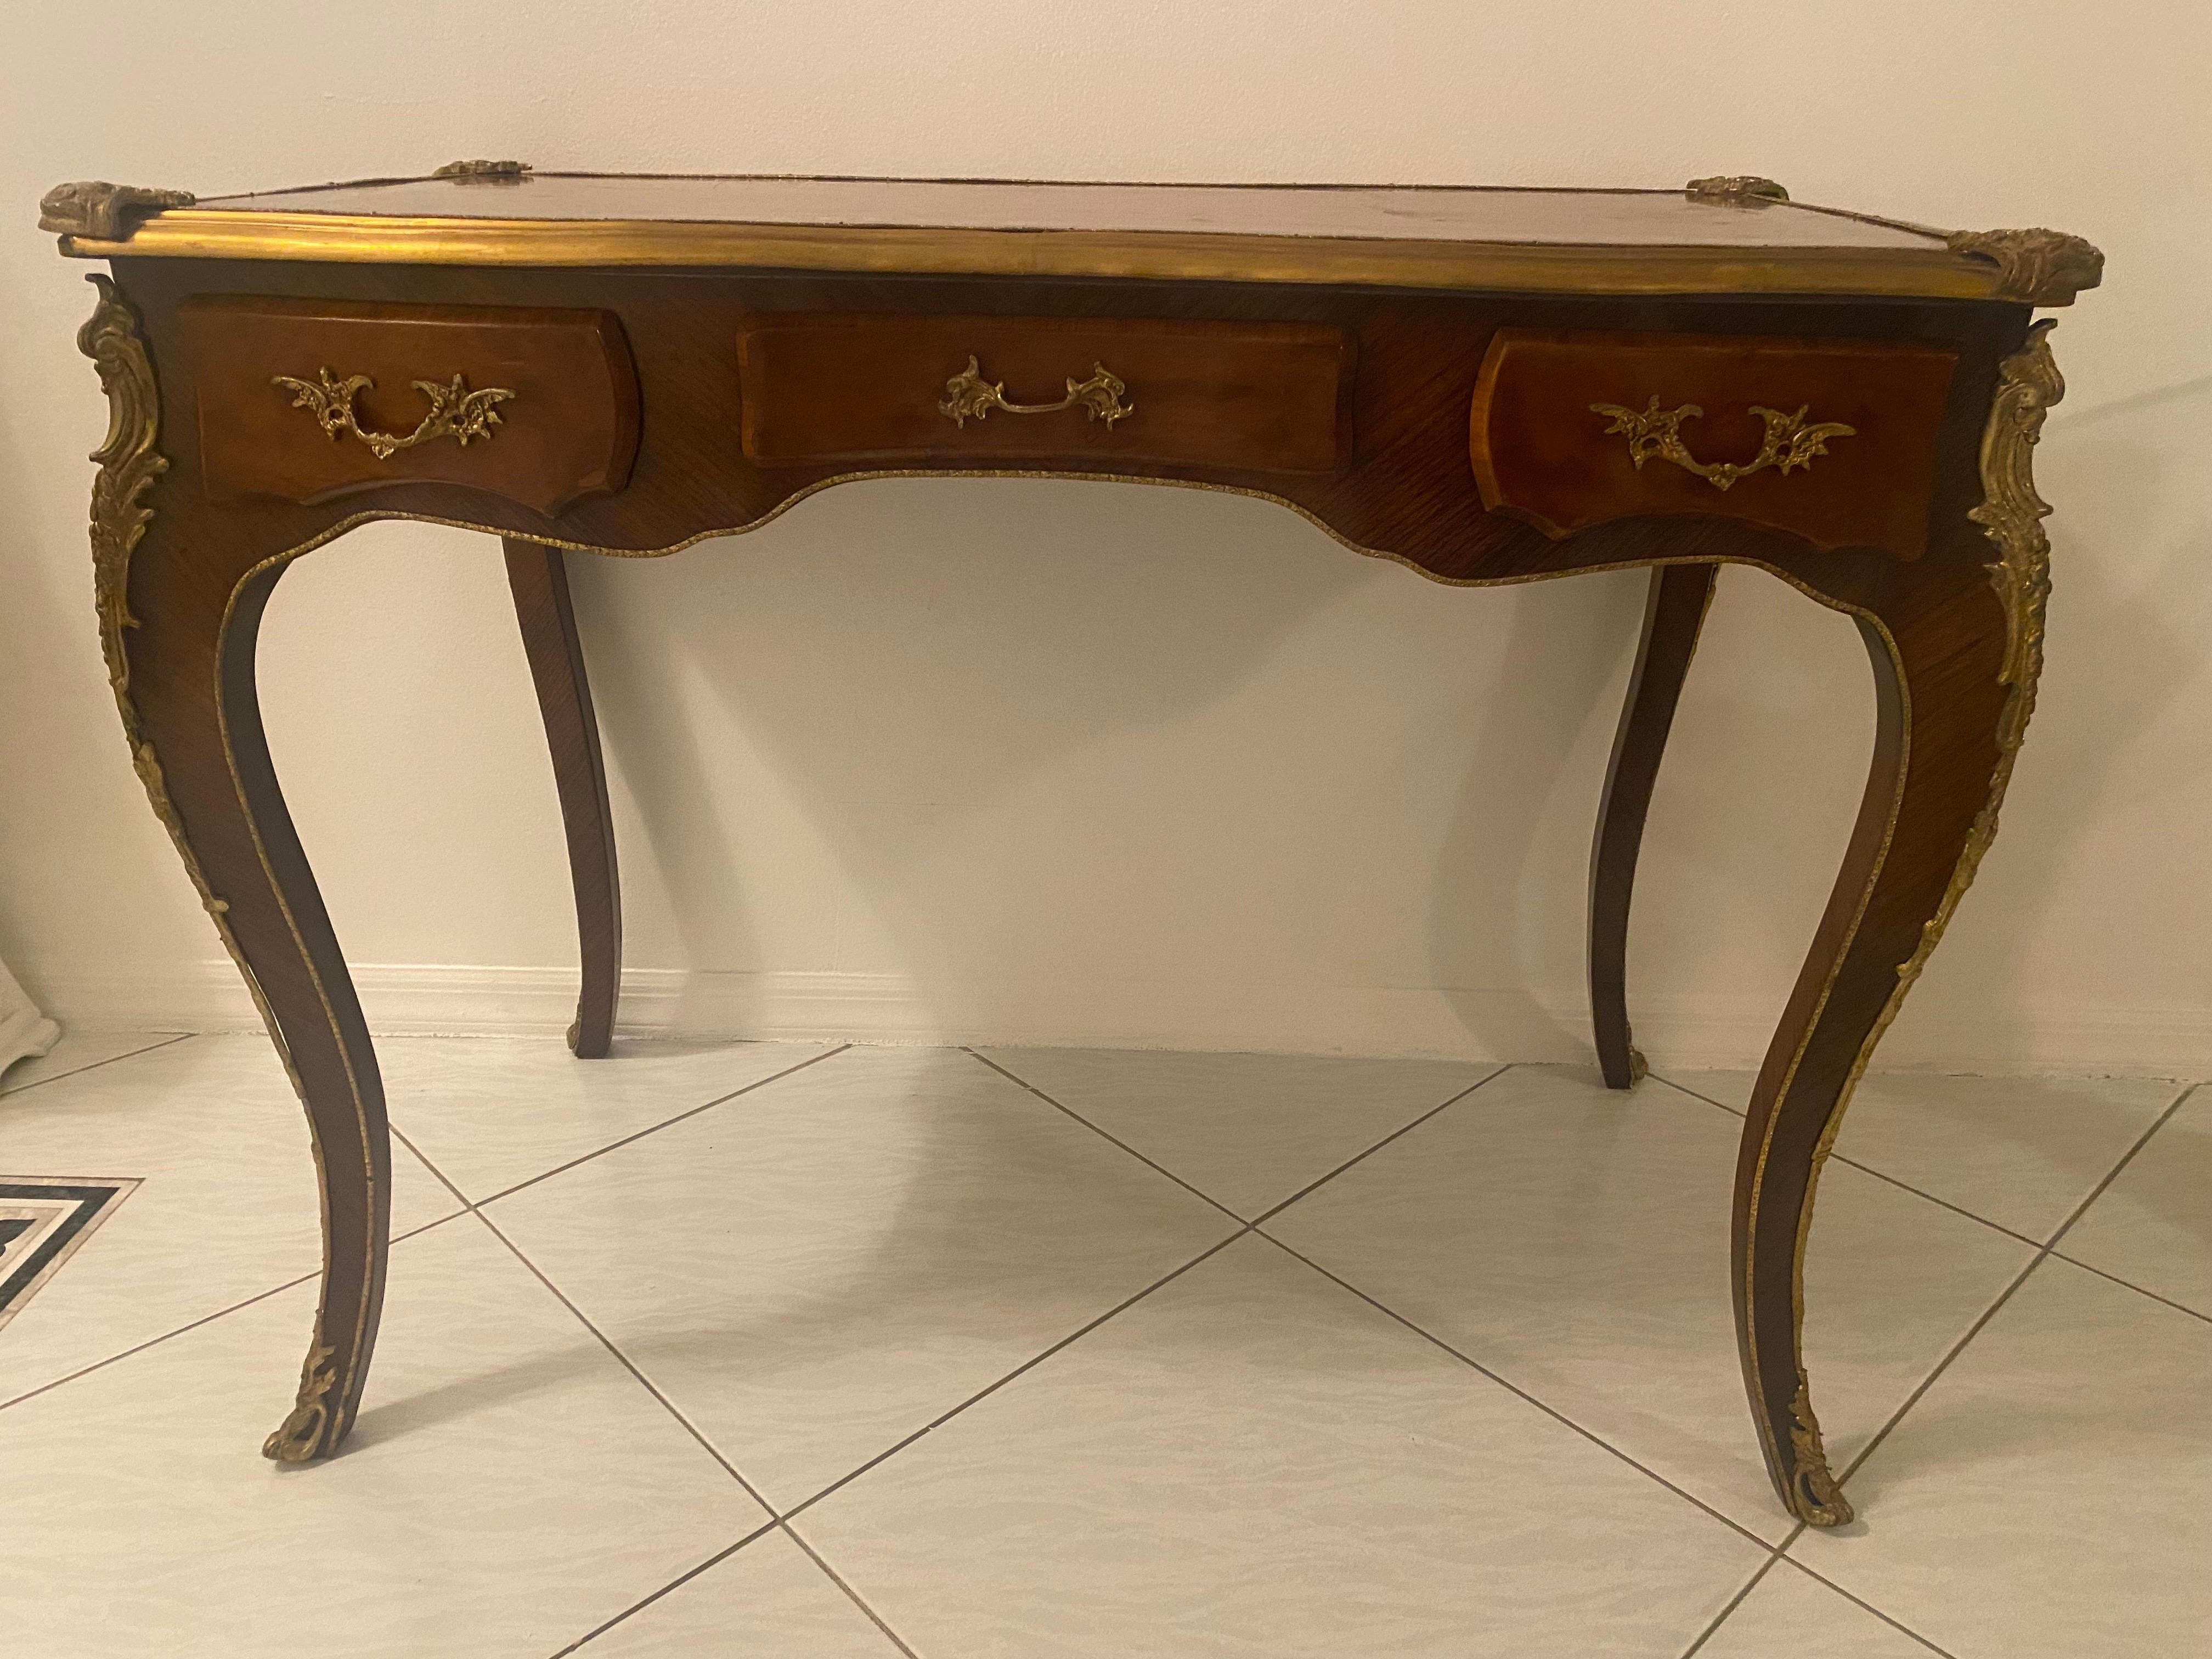 Ein perfektes Beispiel für das Bureau Plat.

Schreibtisch im französischen Empire-Stil mit Holzeinlegearbeiten und vergoldeten Metallbeschlägen an allen Ecken. Dieses Stück verfügt über drei funktionierende Schubladen auf der Vorderseite und drei